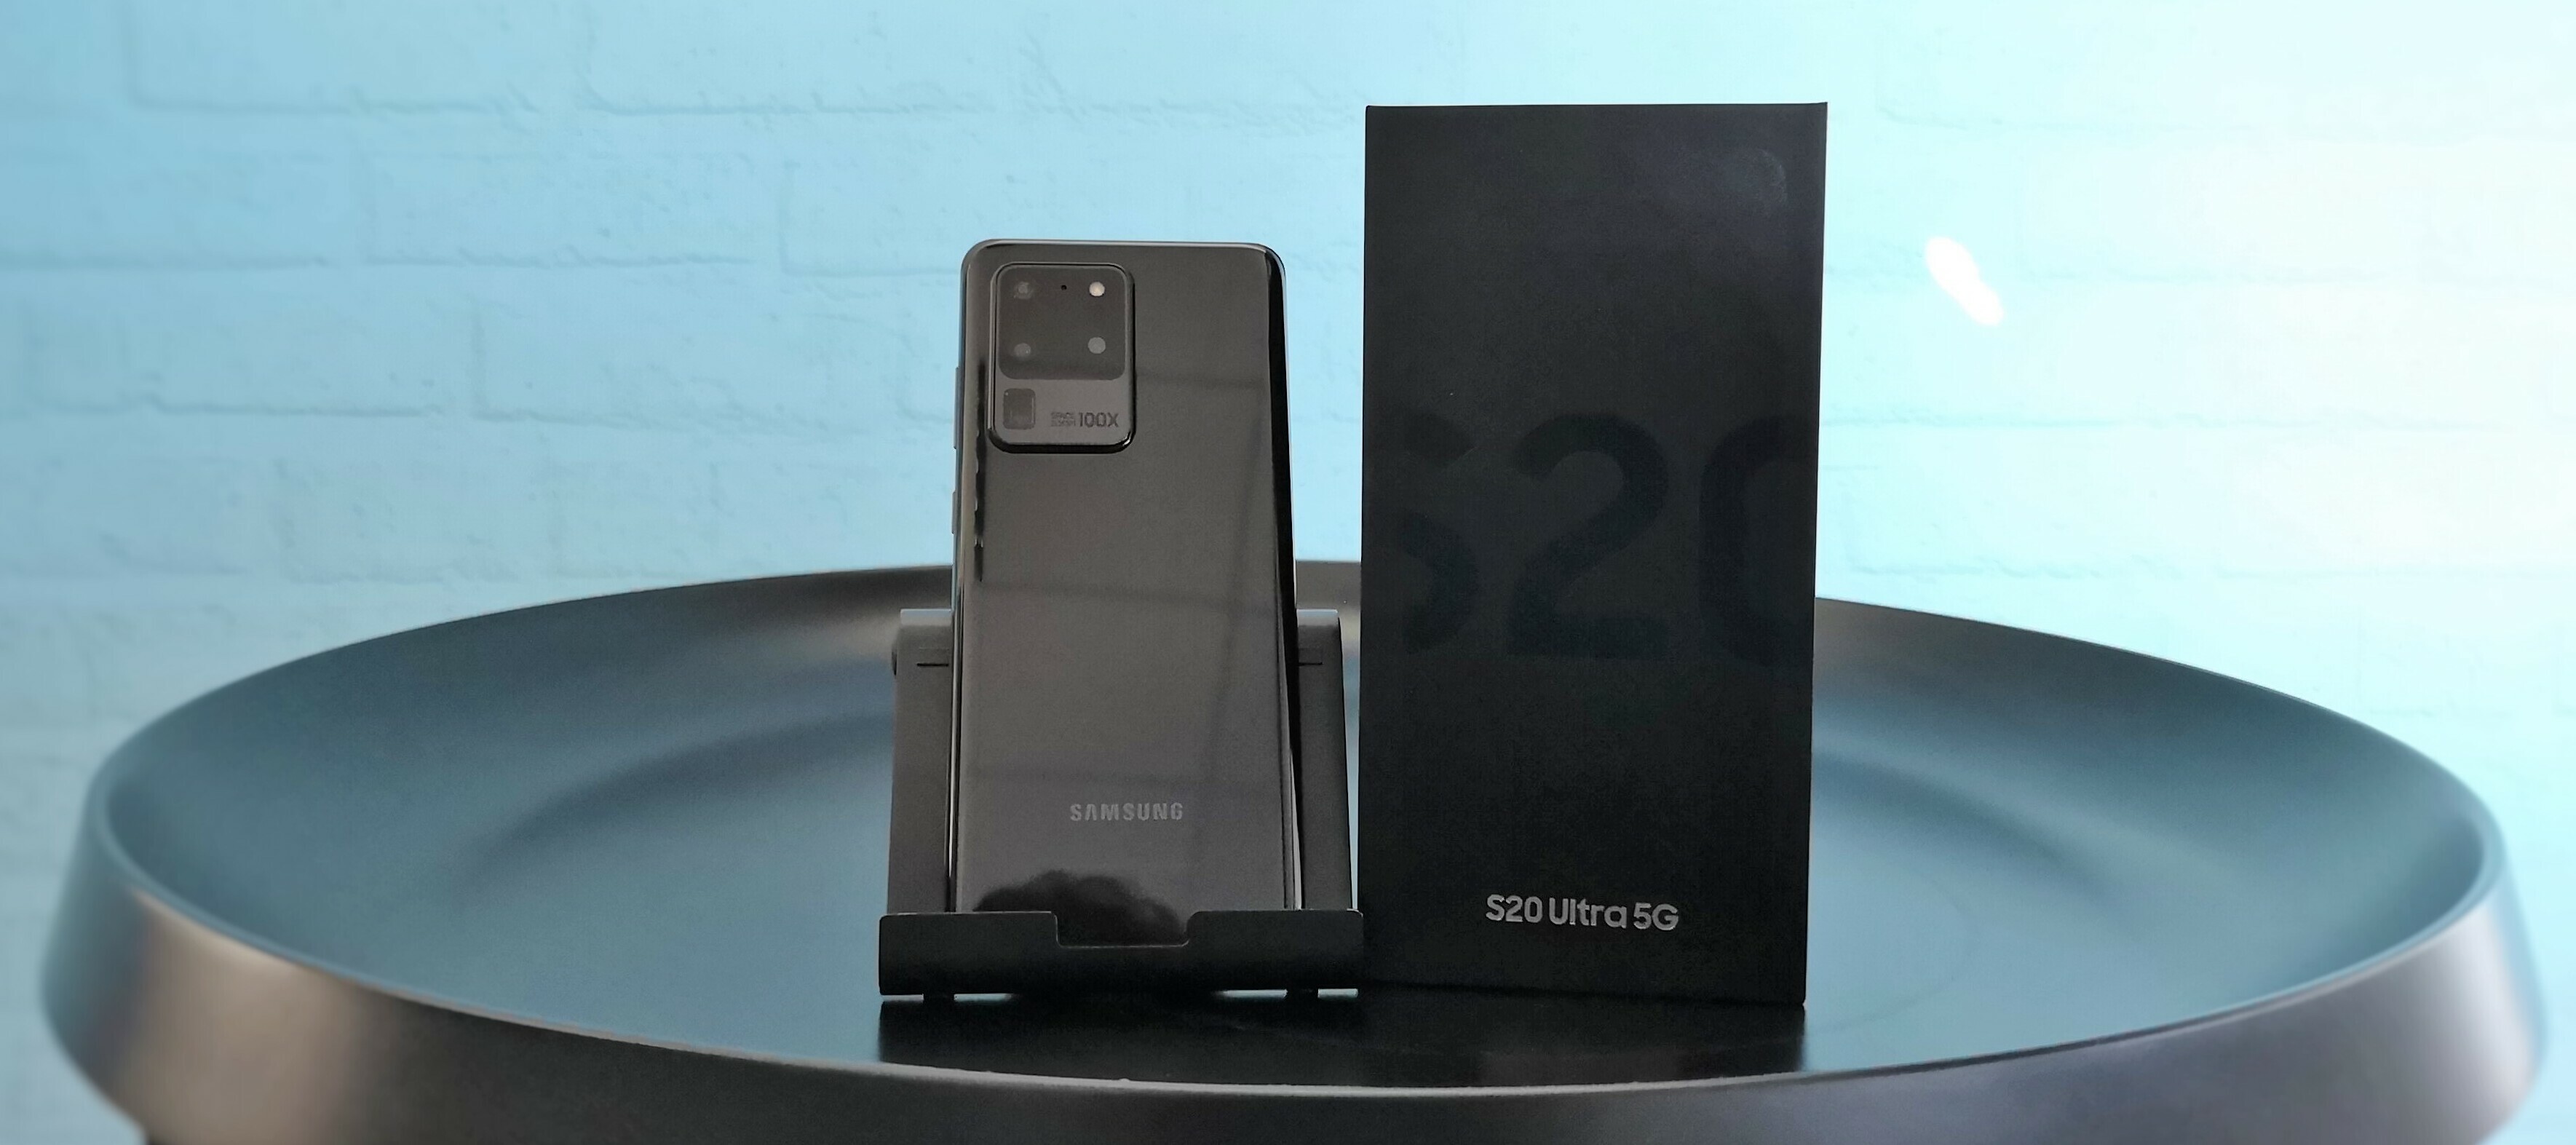 Samsung Galaxy S20 Ultra - Das Flaggschiff sucht einen neuen Produkttest - jetzt bewerben!